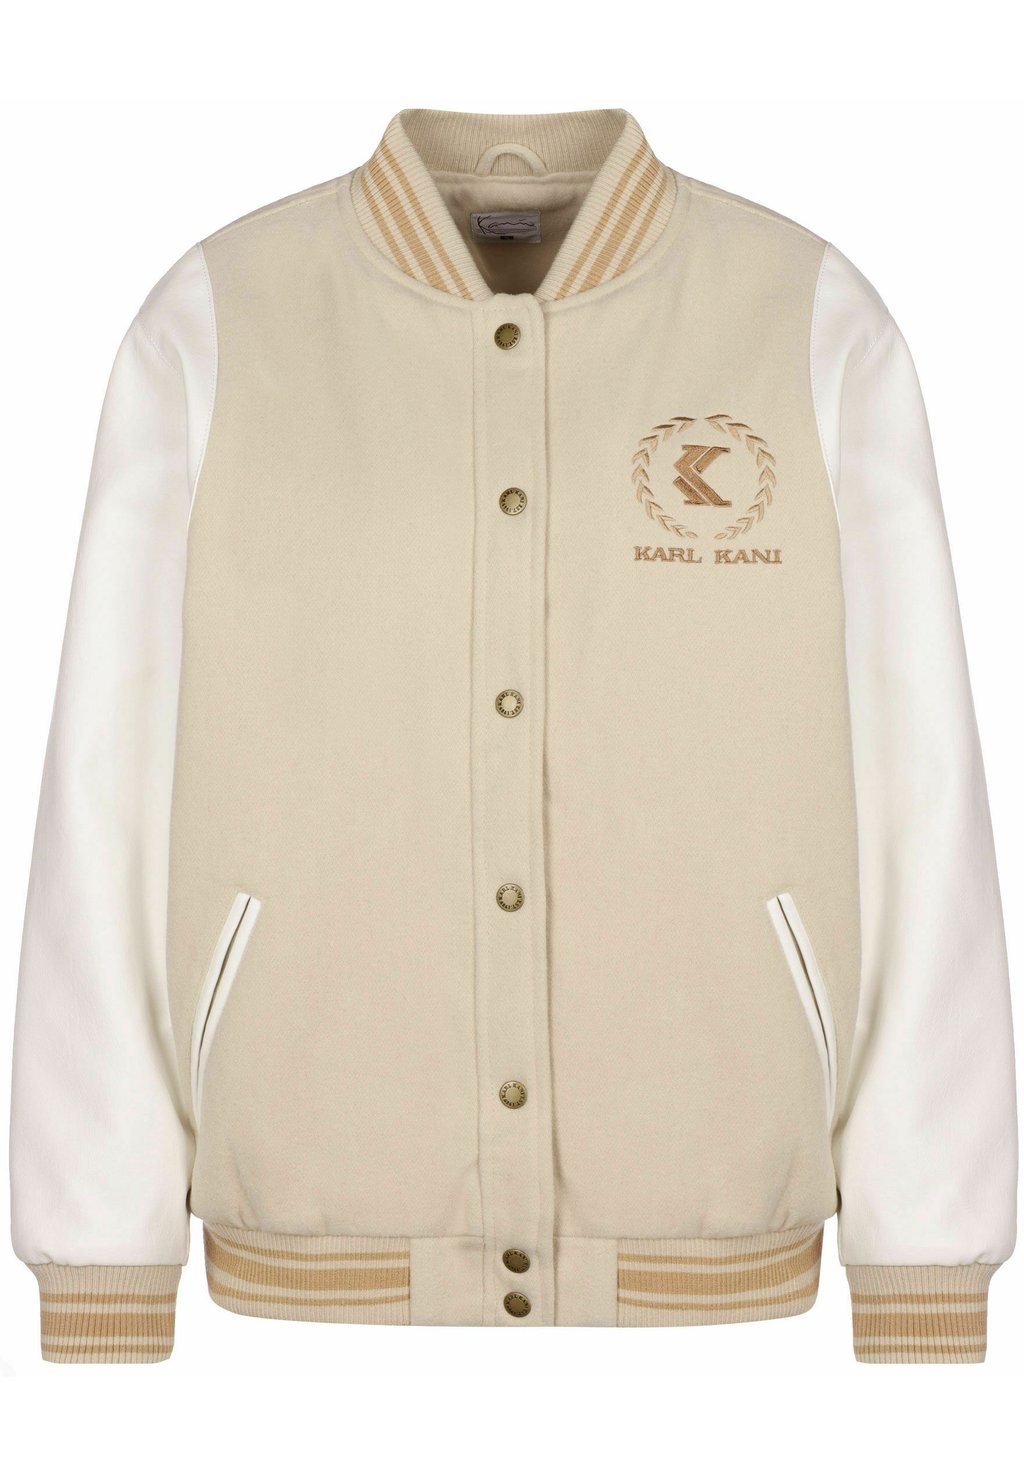 Куртка Karl Kani RETRO EMBLEM BLOCK, светло-кремовый белый цена и фото